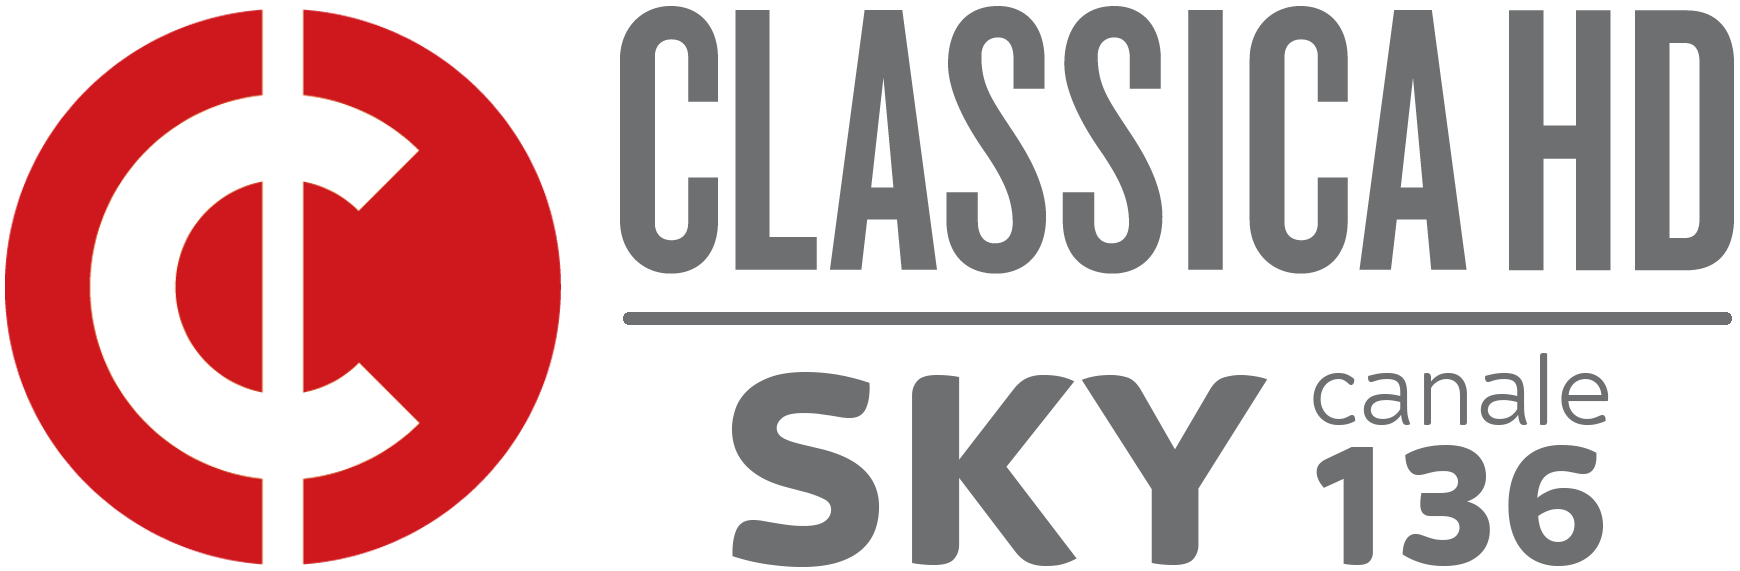 Logo Classica HD